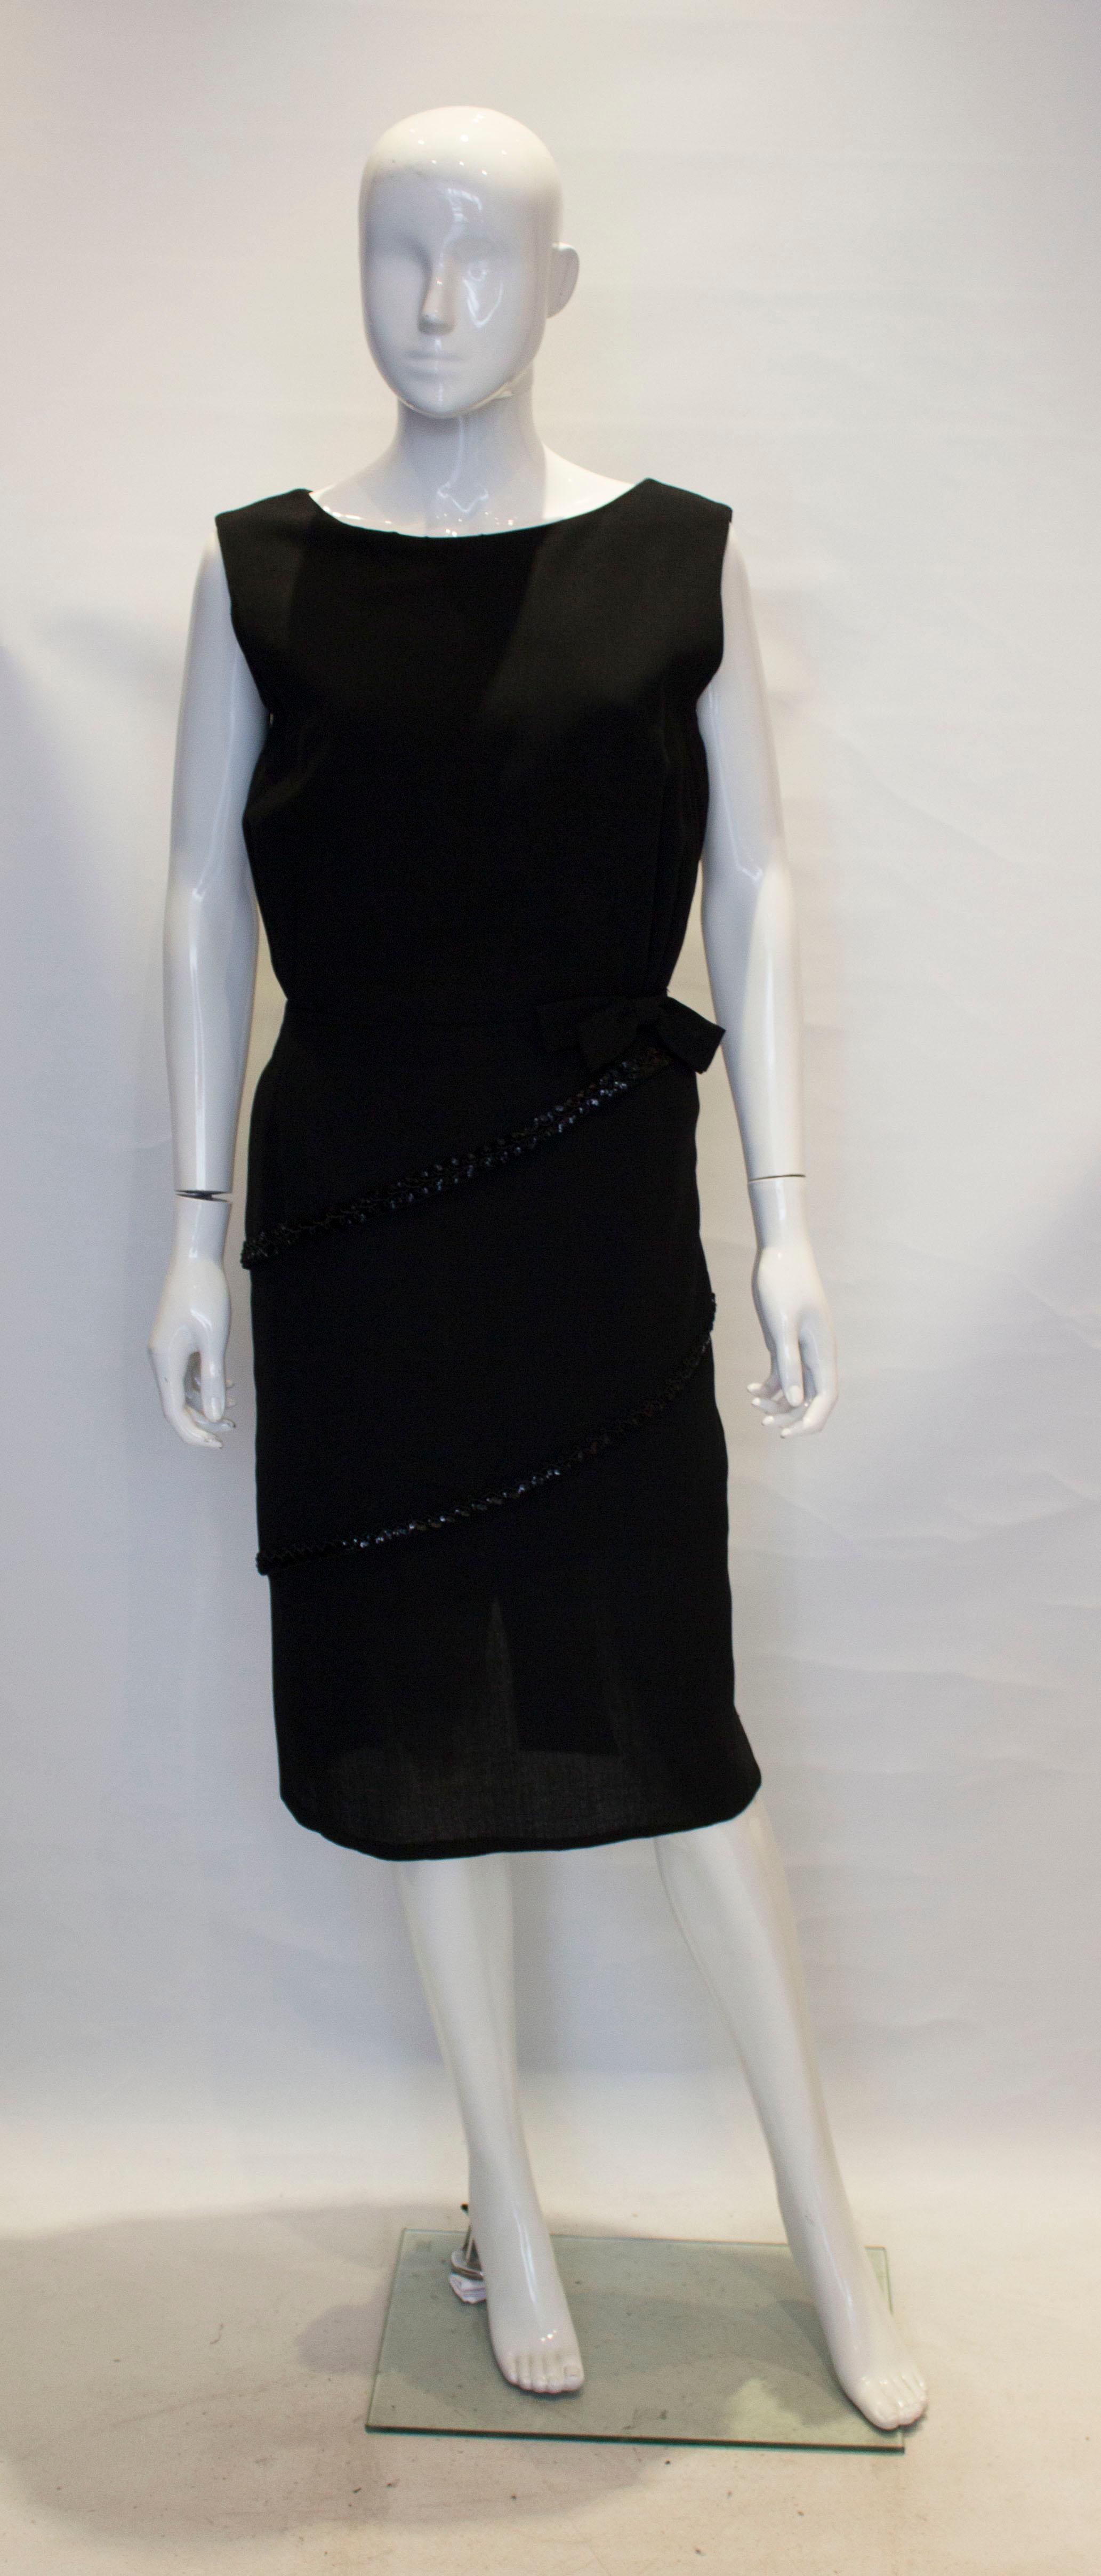 Ein Super  schwarzes Vintage-Kleid von Schroder Wolf.  Das Kleid hat asymmetrische Lagen mit Paillettenbesatz, Raffungen unter der Brust und einen zentralen Reißverschluss am Rücken. Es ist vollständig gefüttert. 